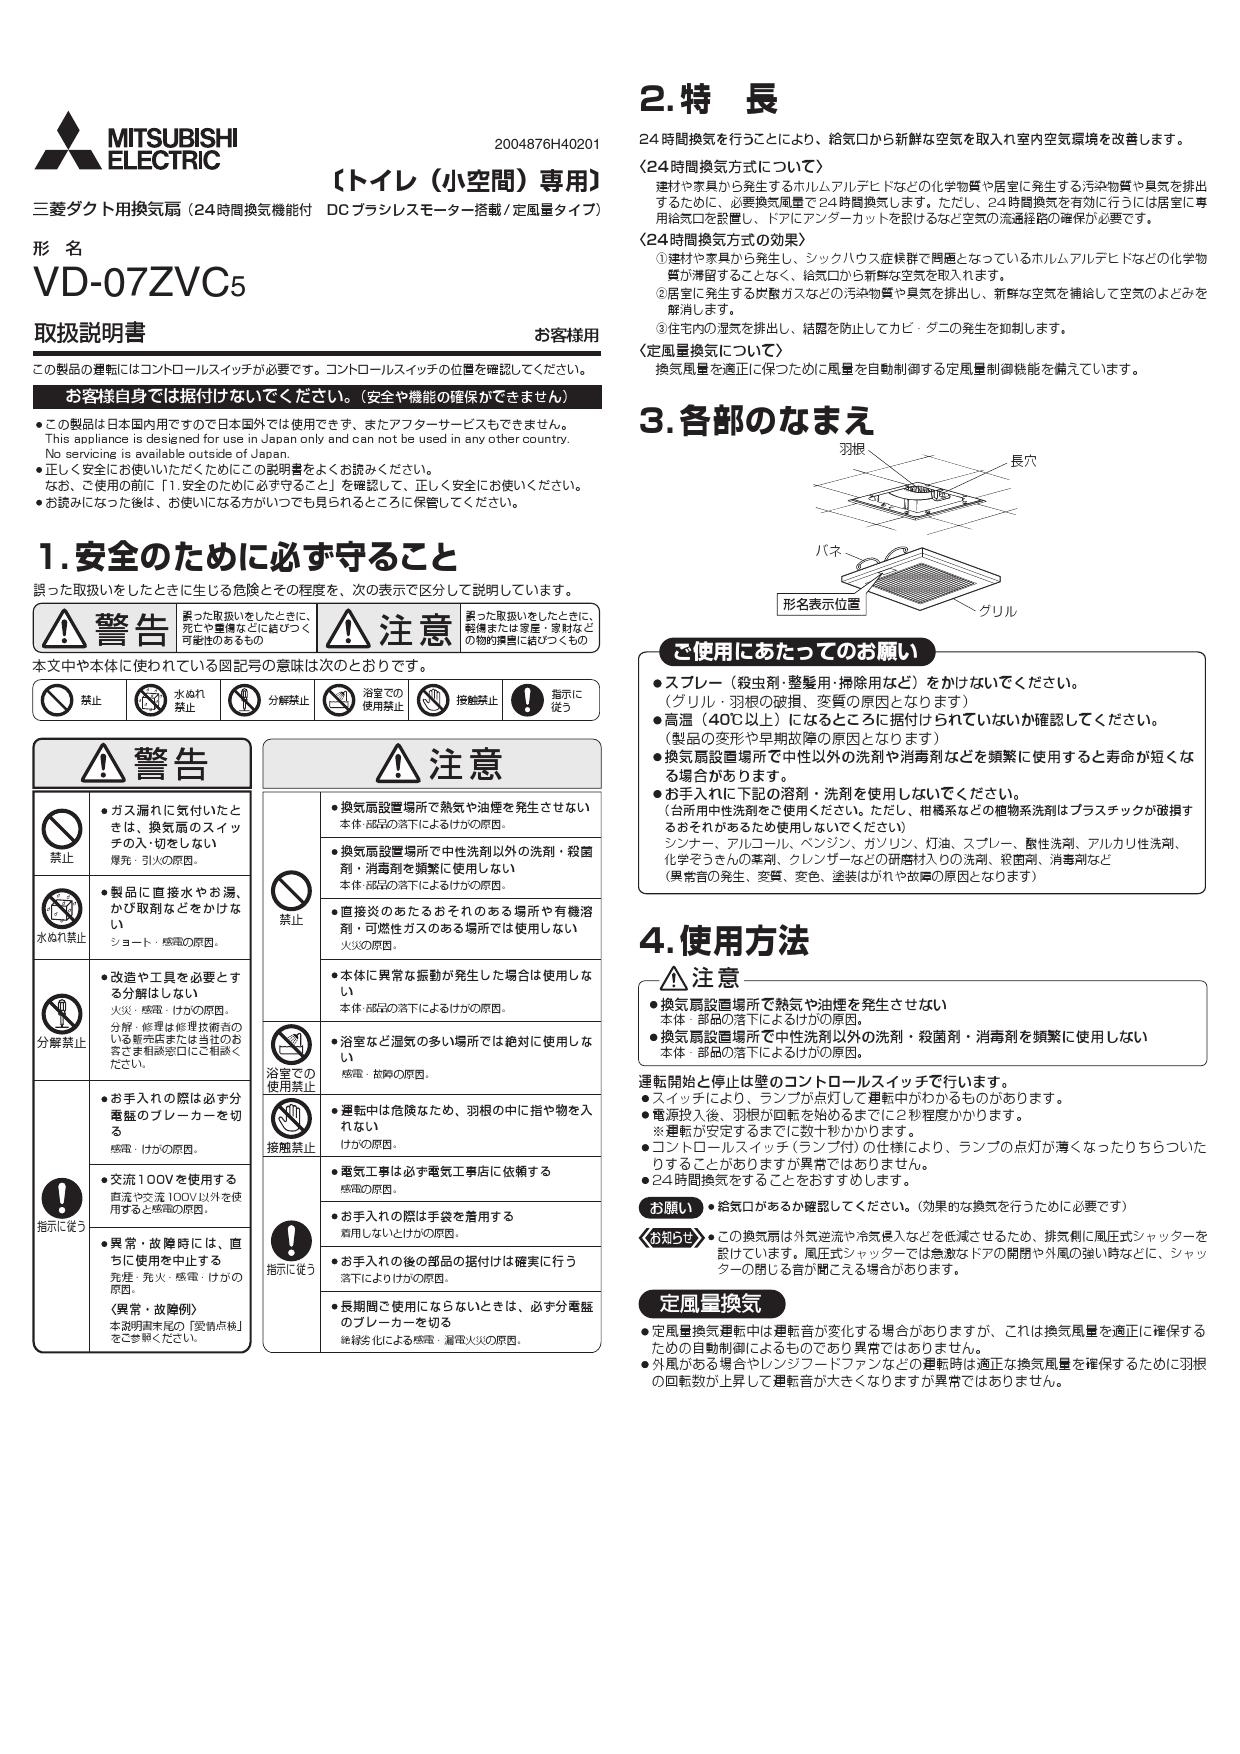 MITSUBISHI VD-23ZVE6-FP 換気扇・ロスナイ 24時間換気機能付換気扇 ダクト用換気扇 - 4